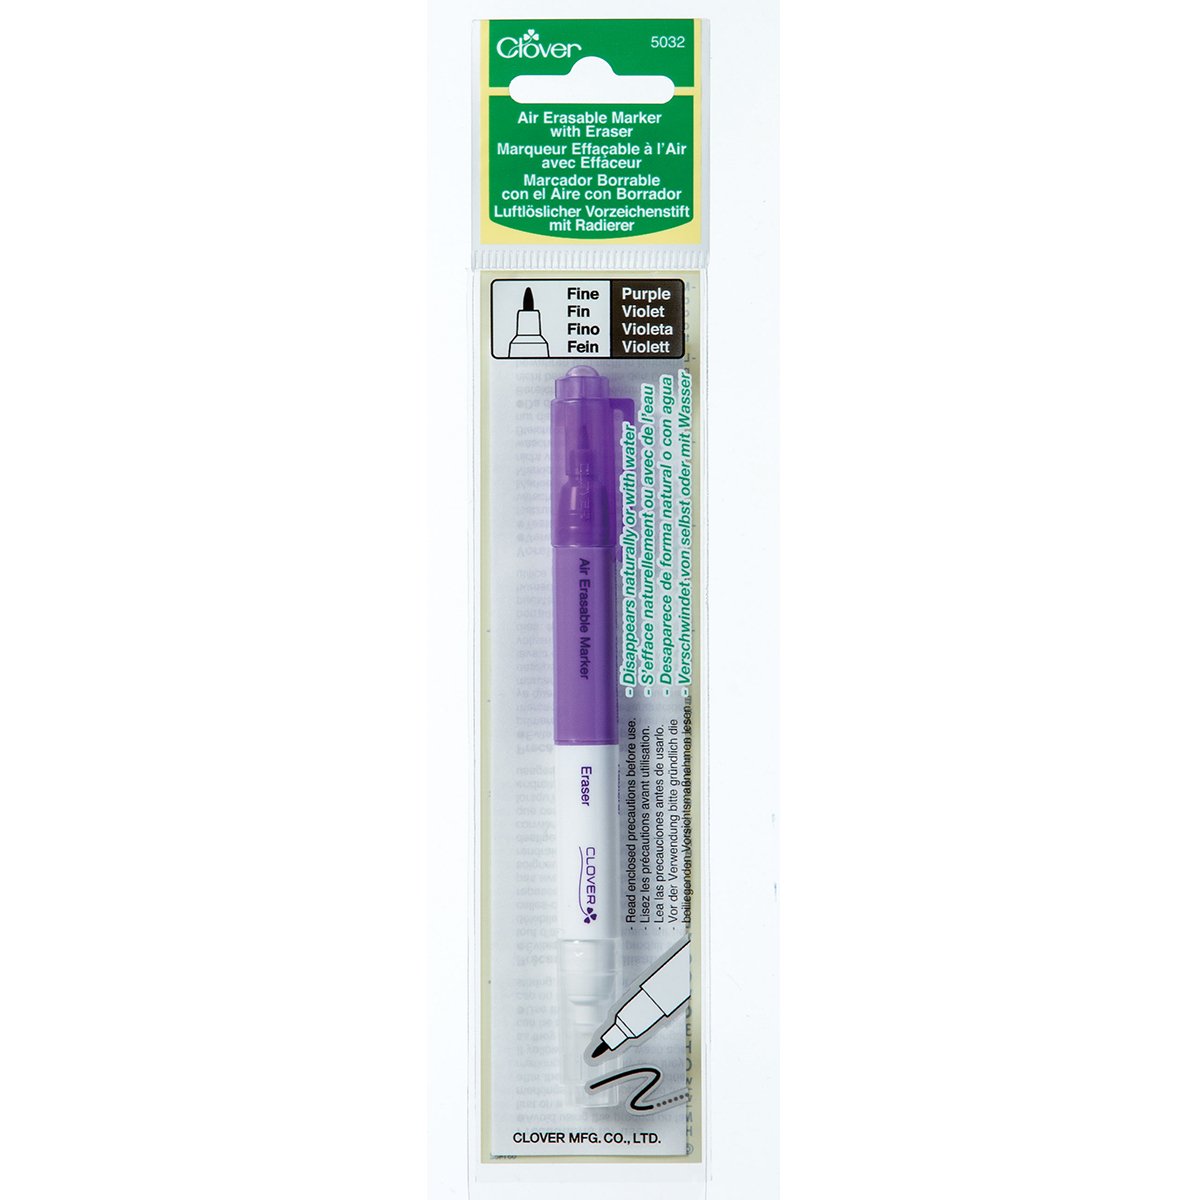 CLV - Air Erasable Marker with Eraser